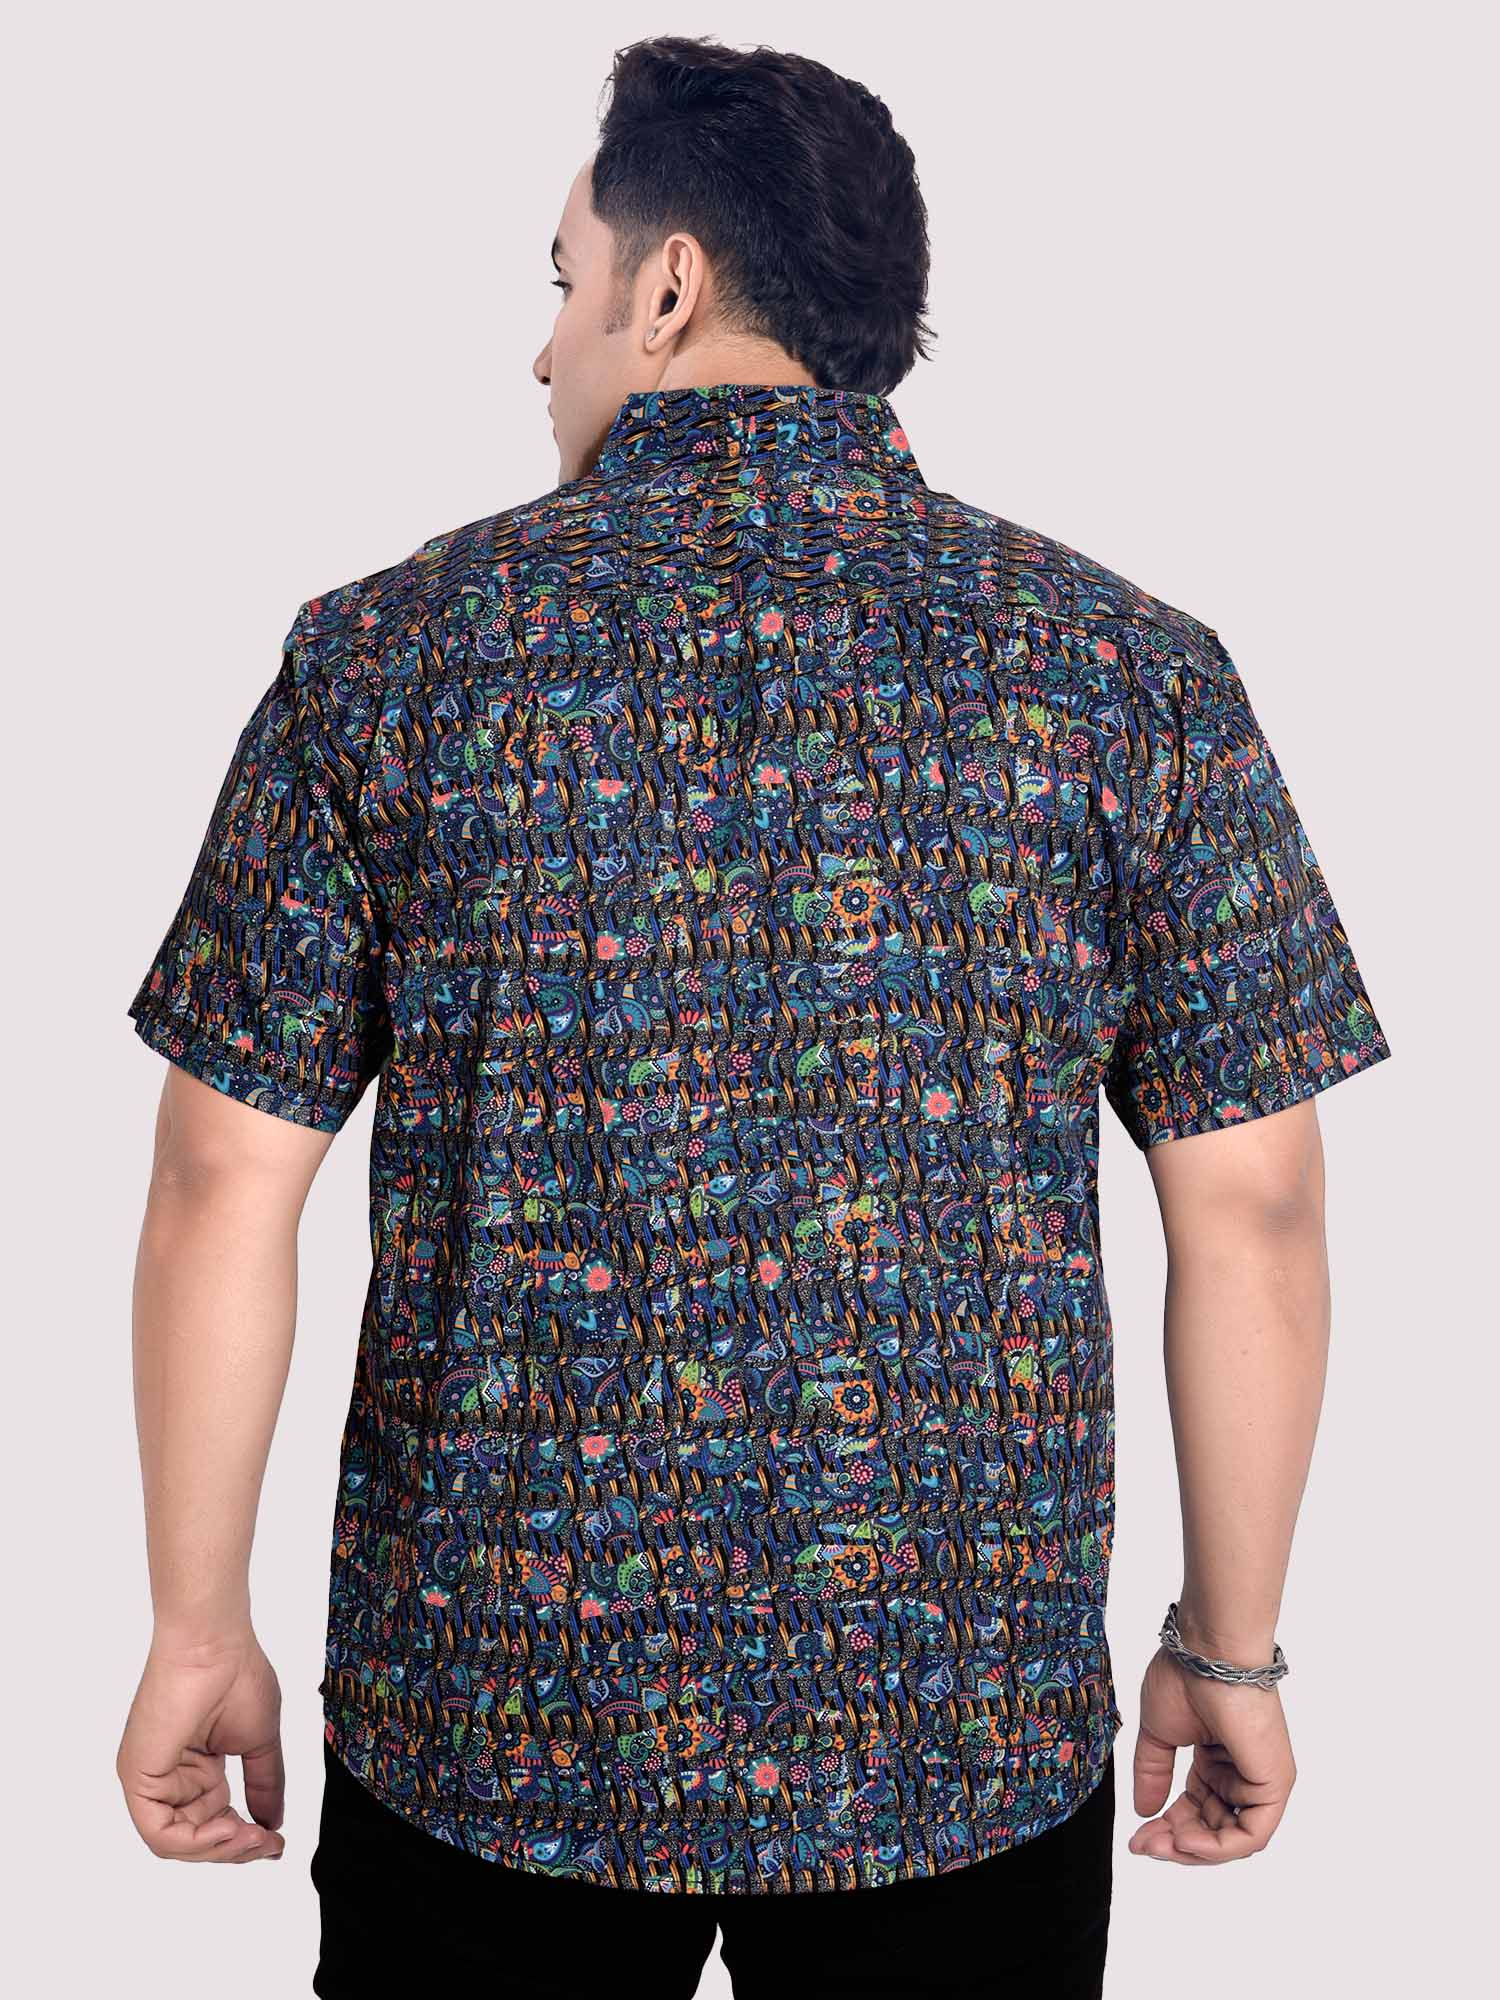 Little Paisley Digital Printed Shirt Men's Plus Size